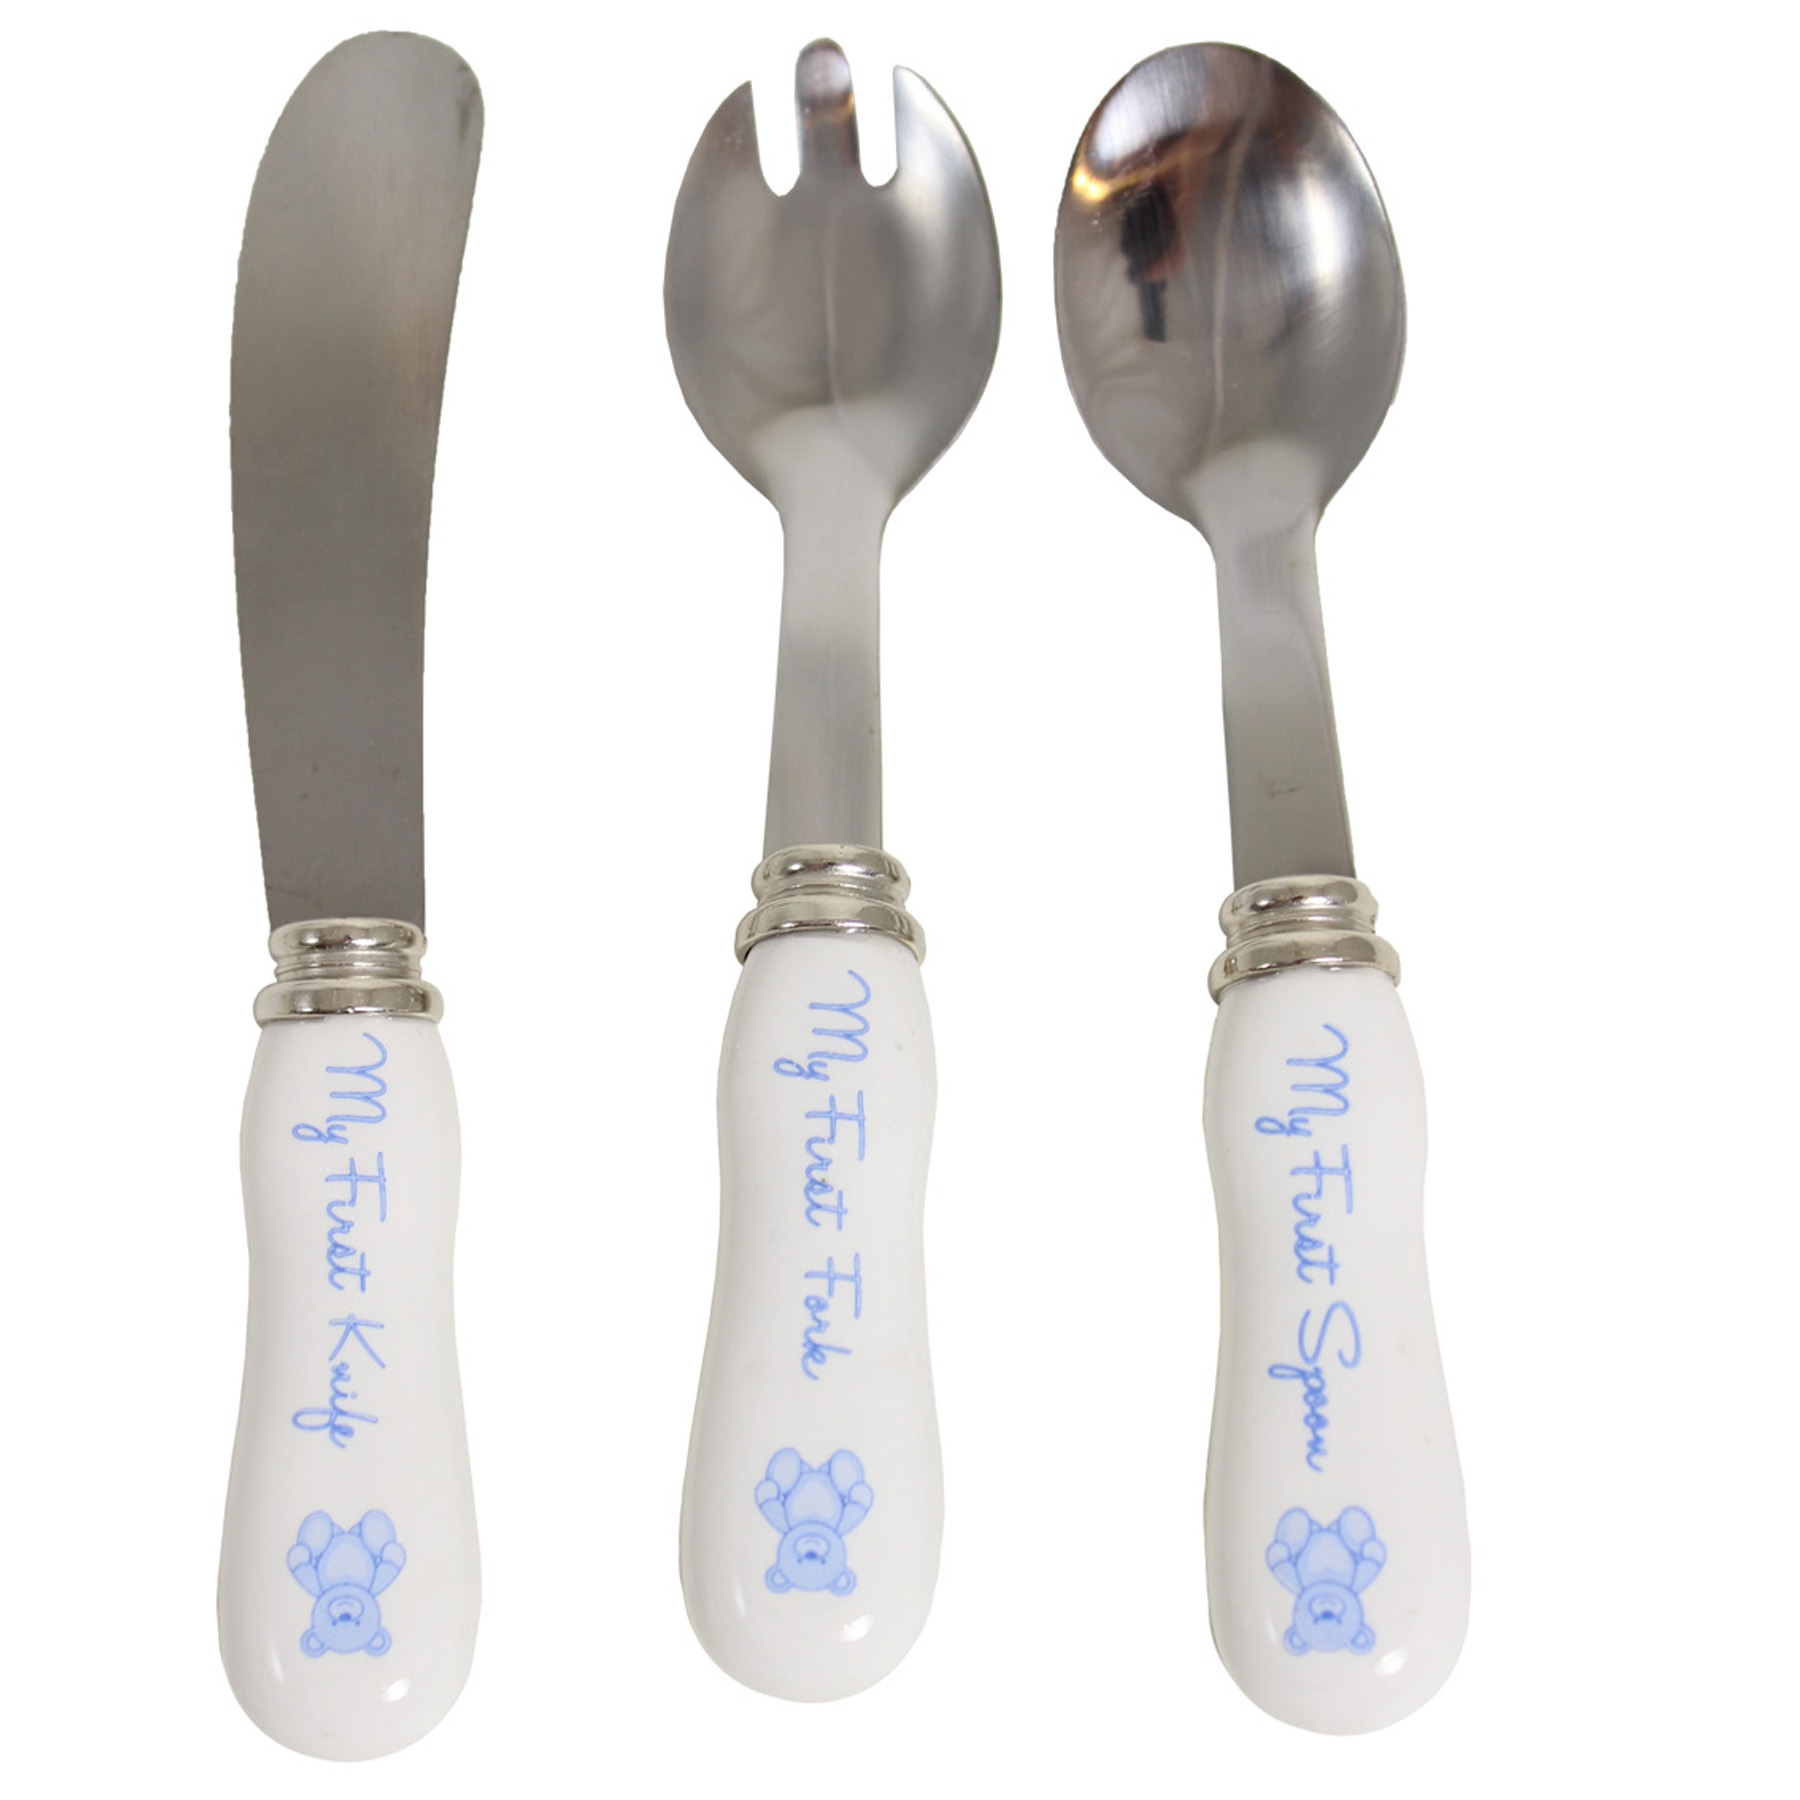 My First Cutlery Set - Spoon, Knife Fork - Blue Teddy Design - Baby Boy